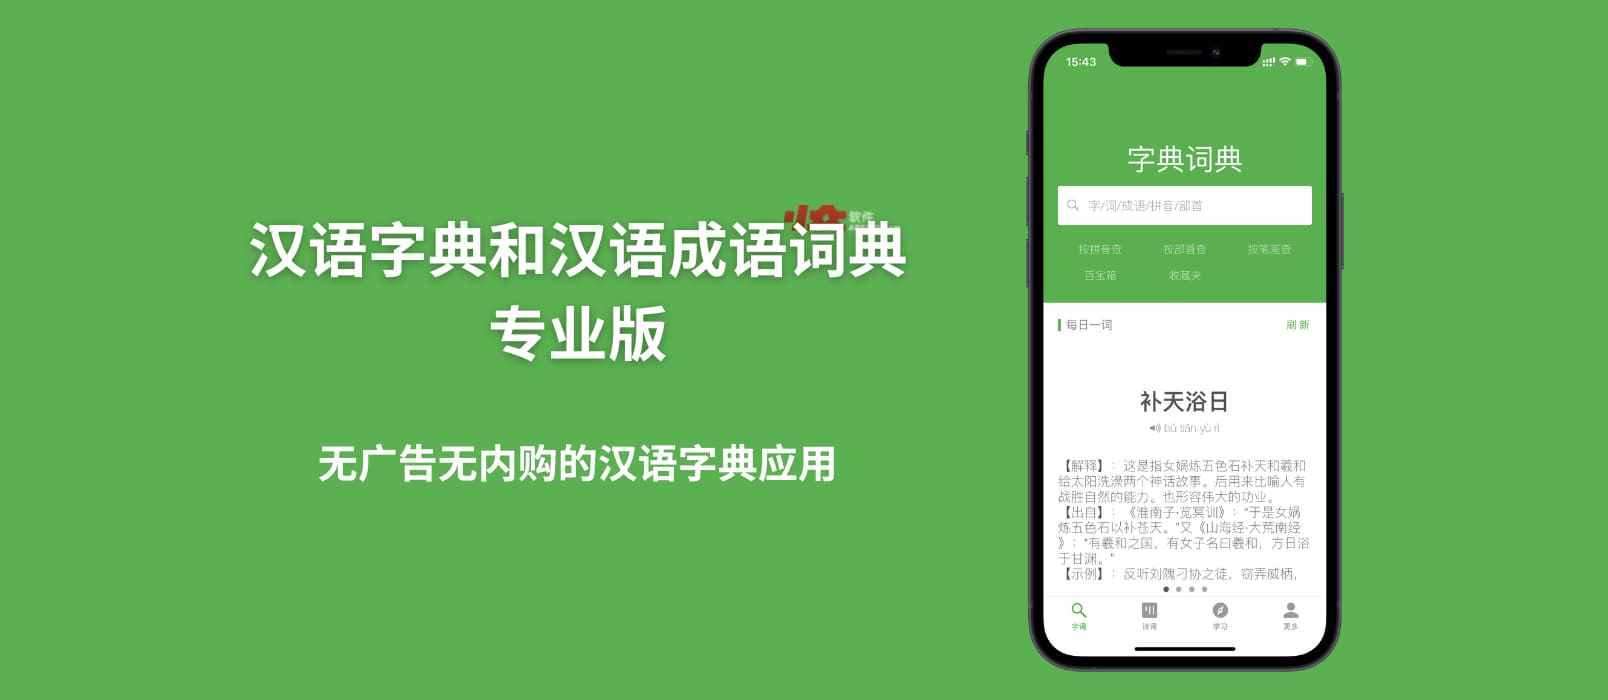 汉语字典和汉语成语词典专业版 - 无广告无内购的汉语字典应用[iPhone/iPad]